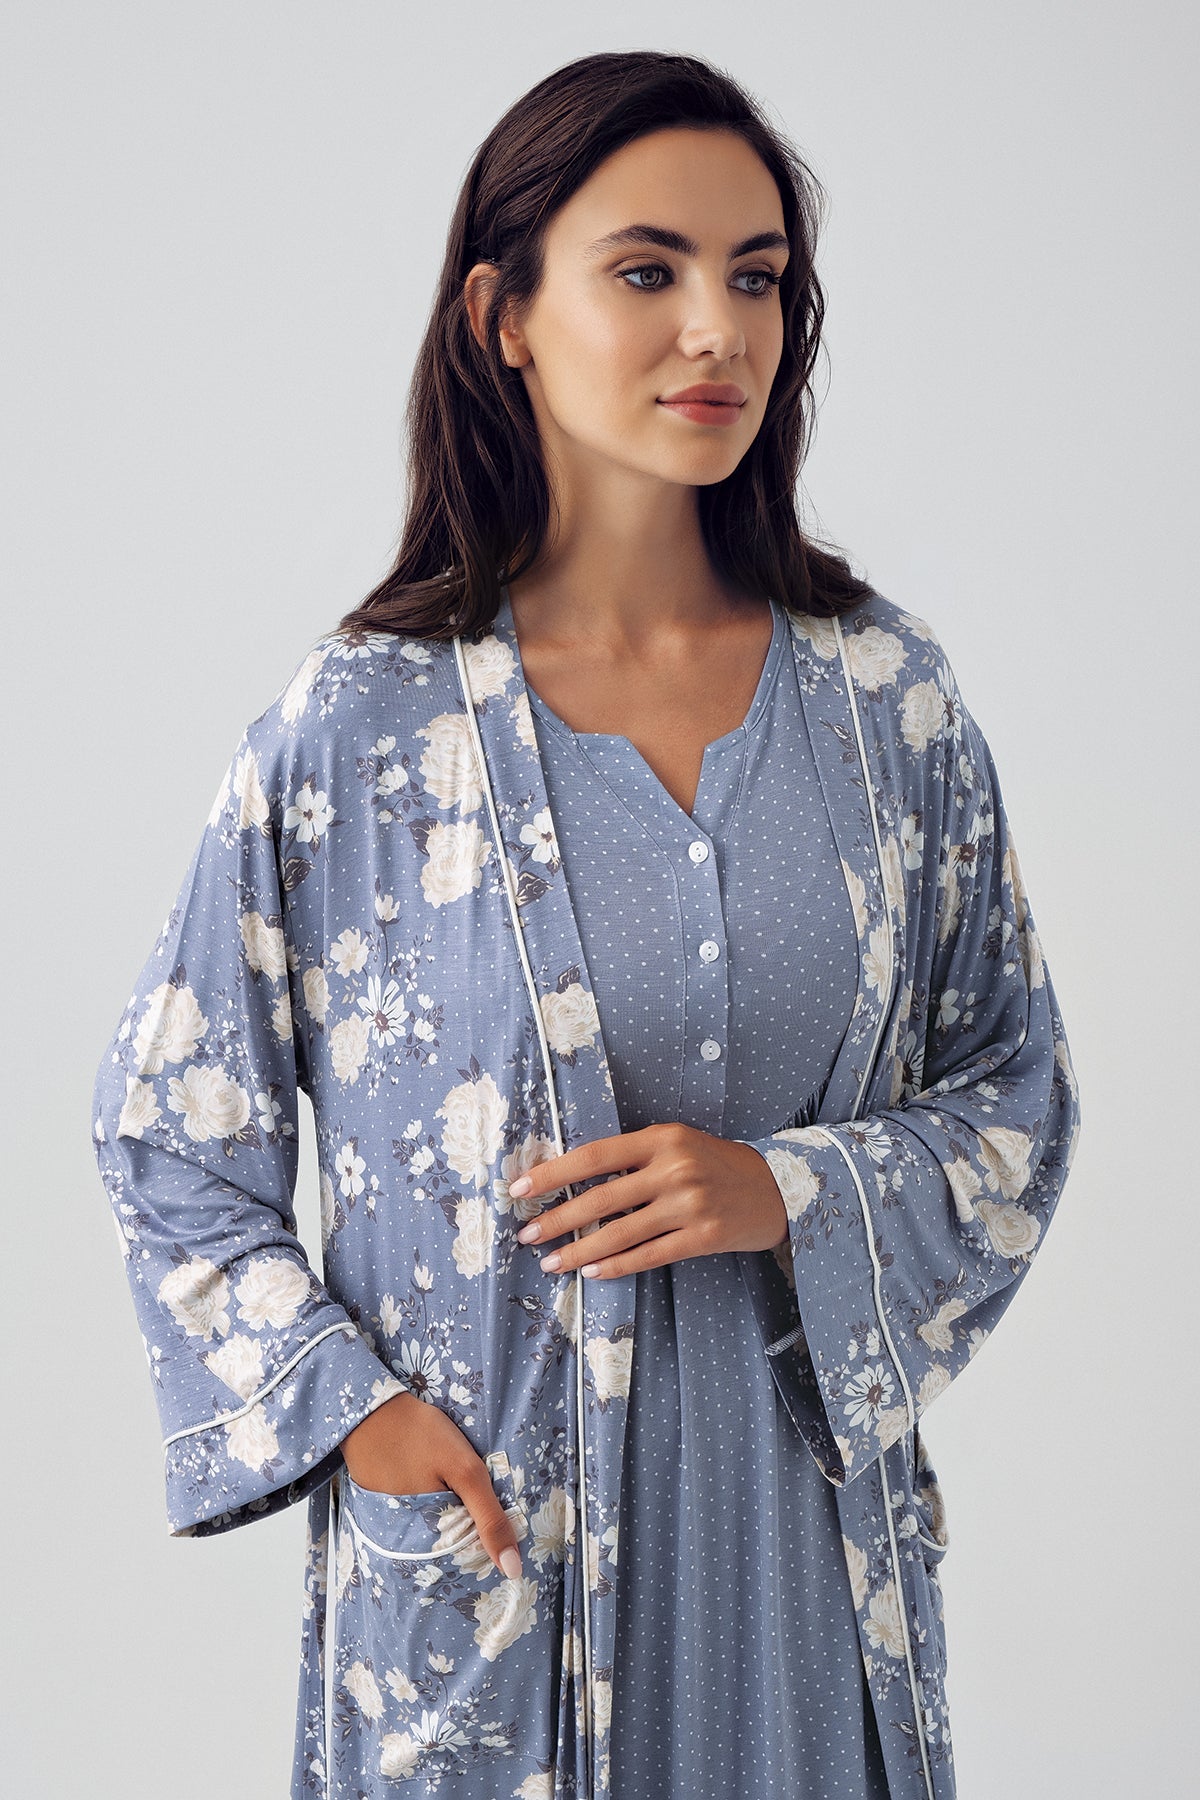 Shopymommy 15404 Polka Dot Maternity & Nursing Nightgown With Flower Patterned Robe Indigo